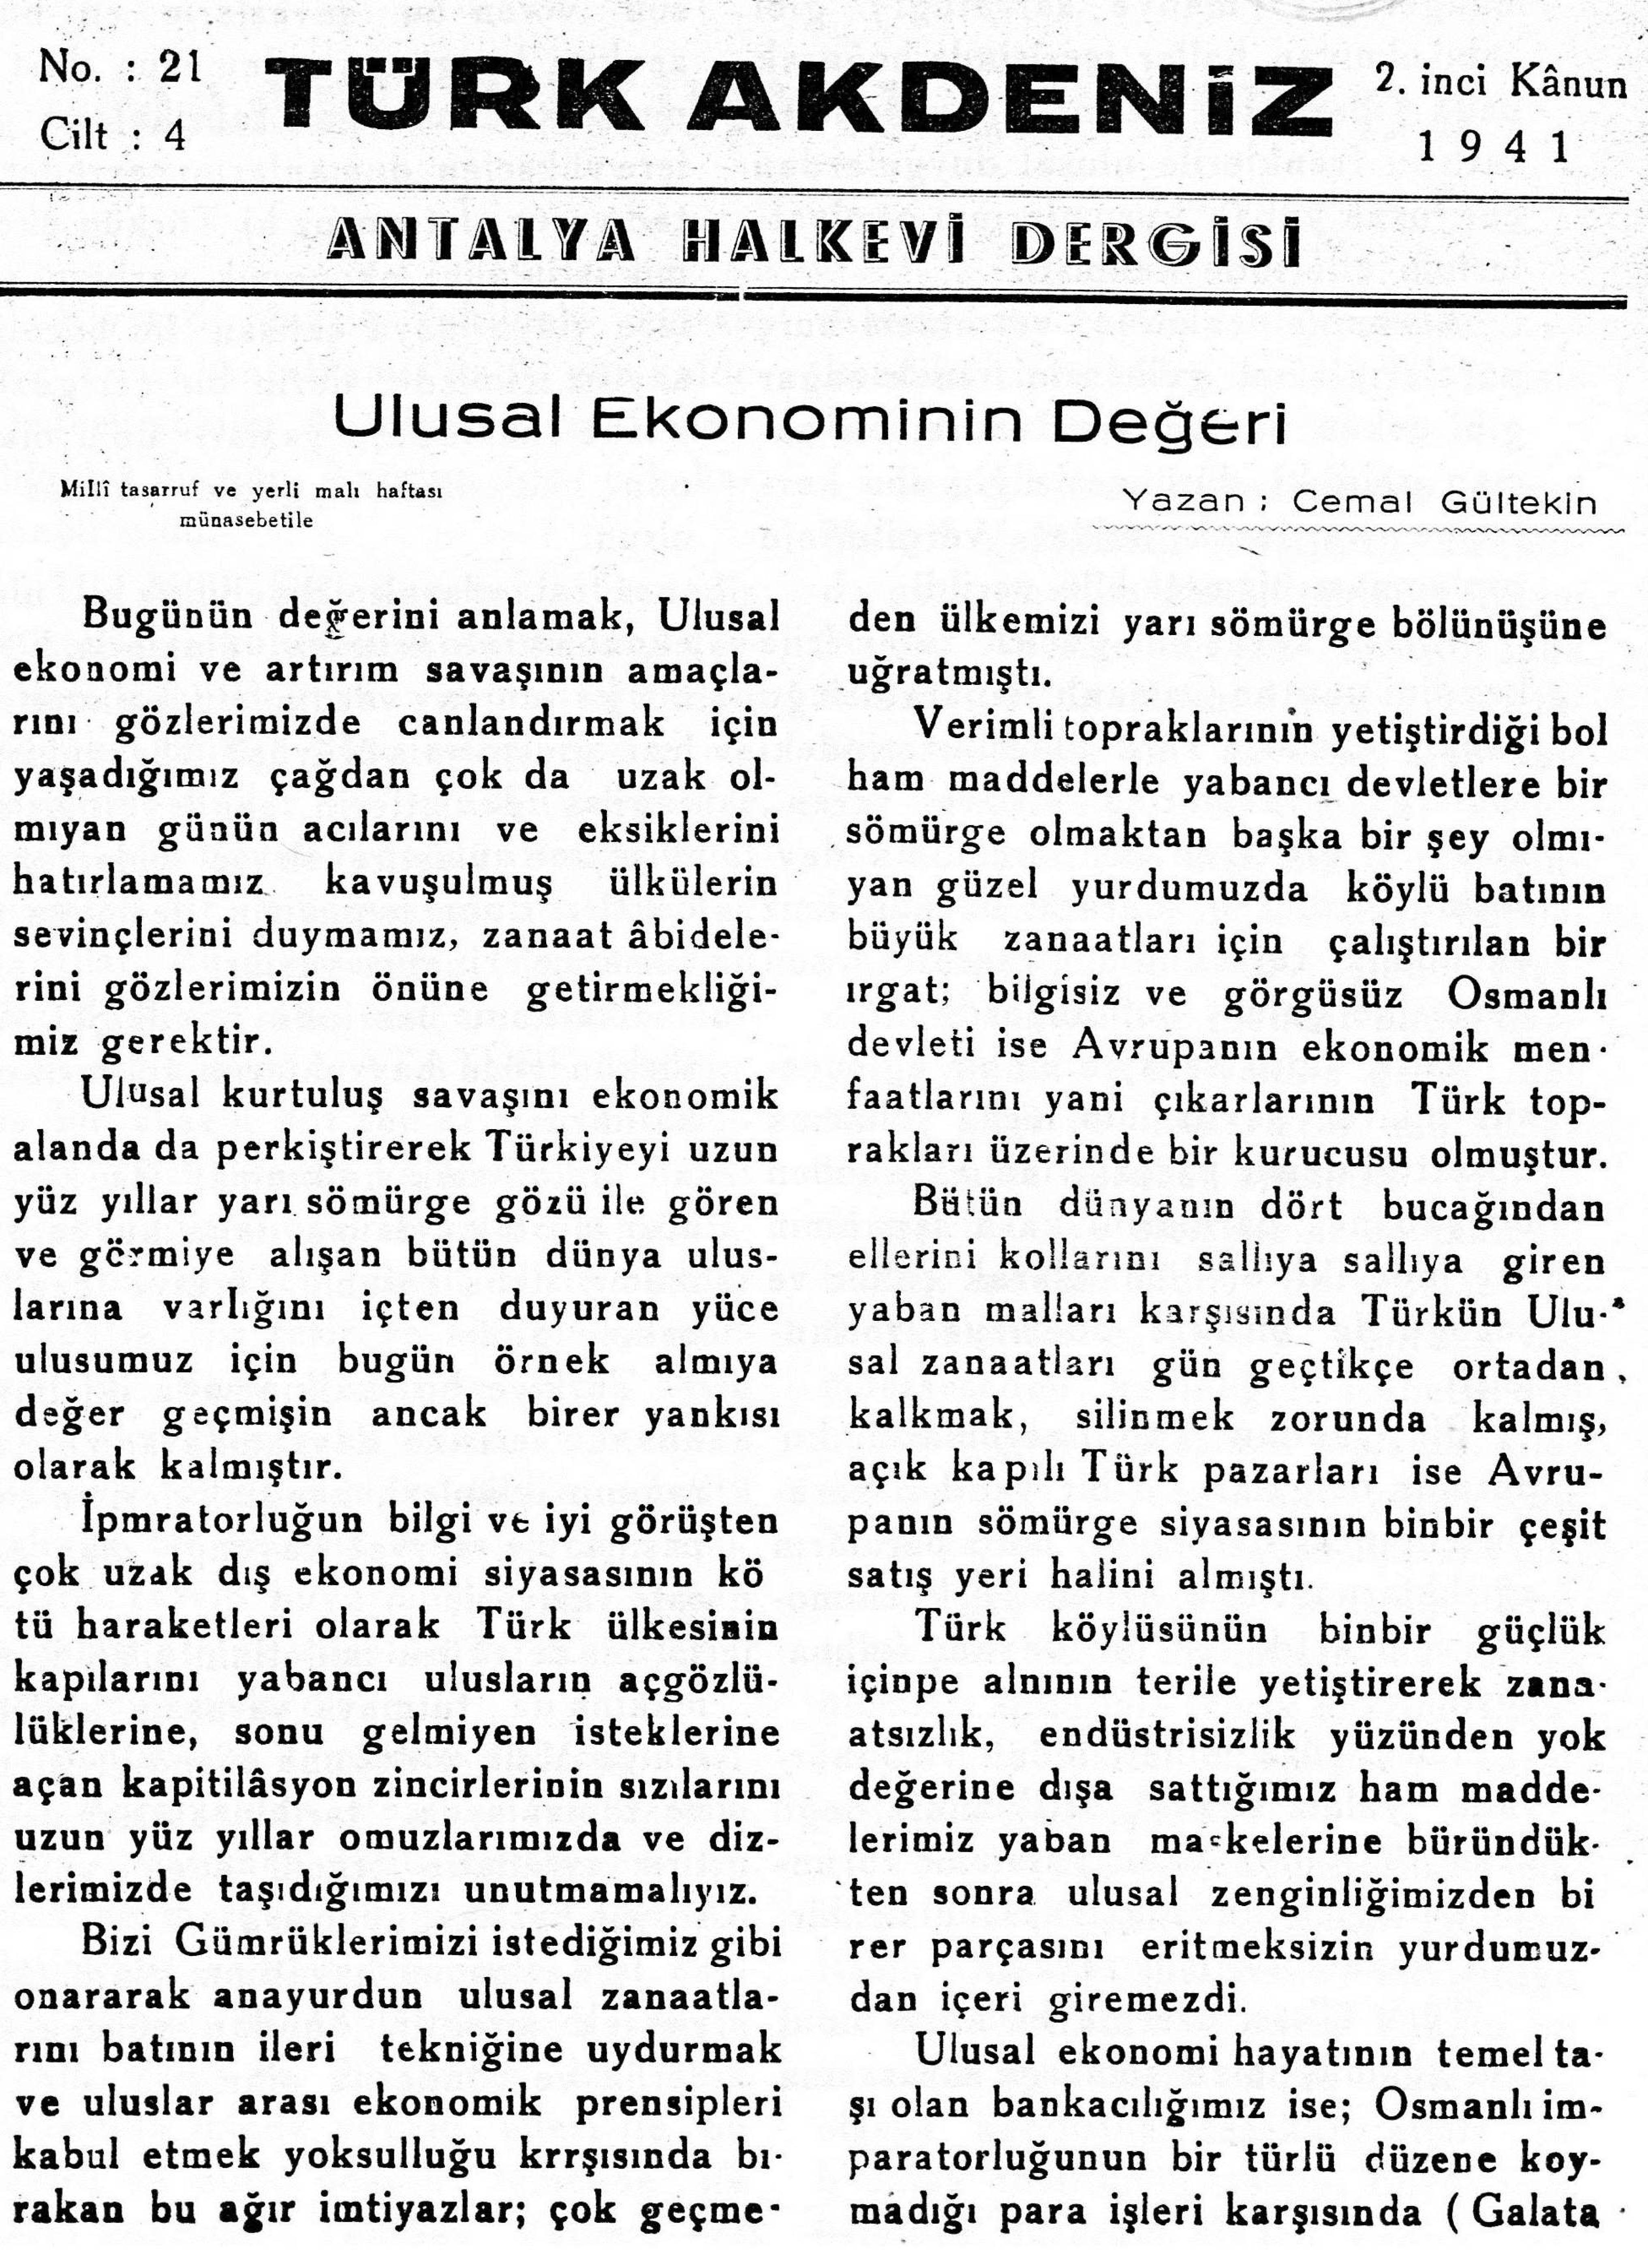 he-turk-akdeniz_1941-4(21)